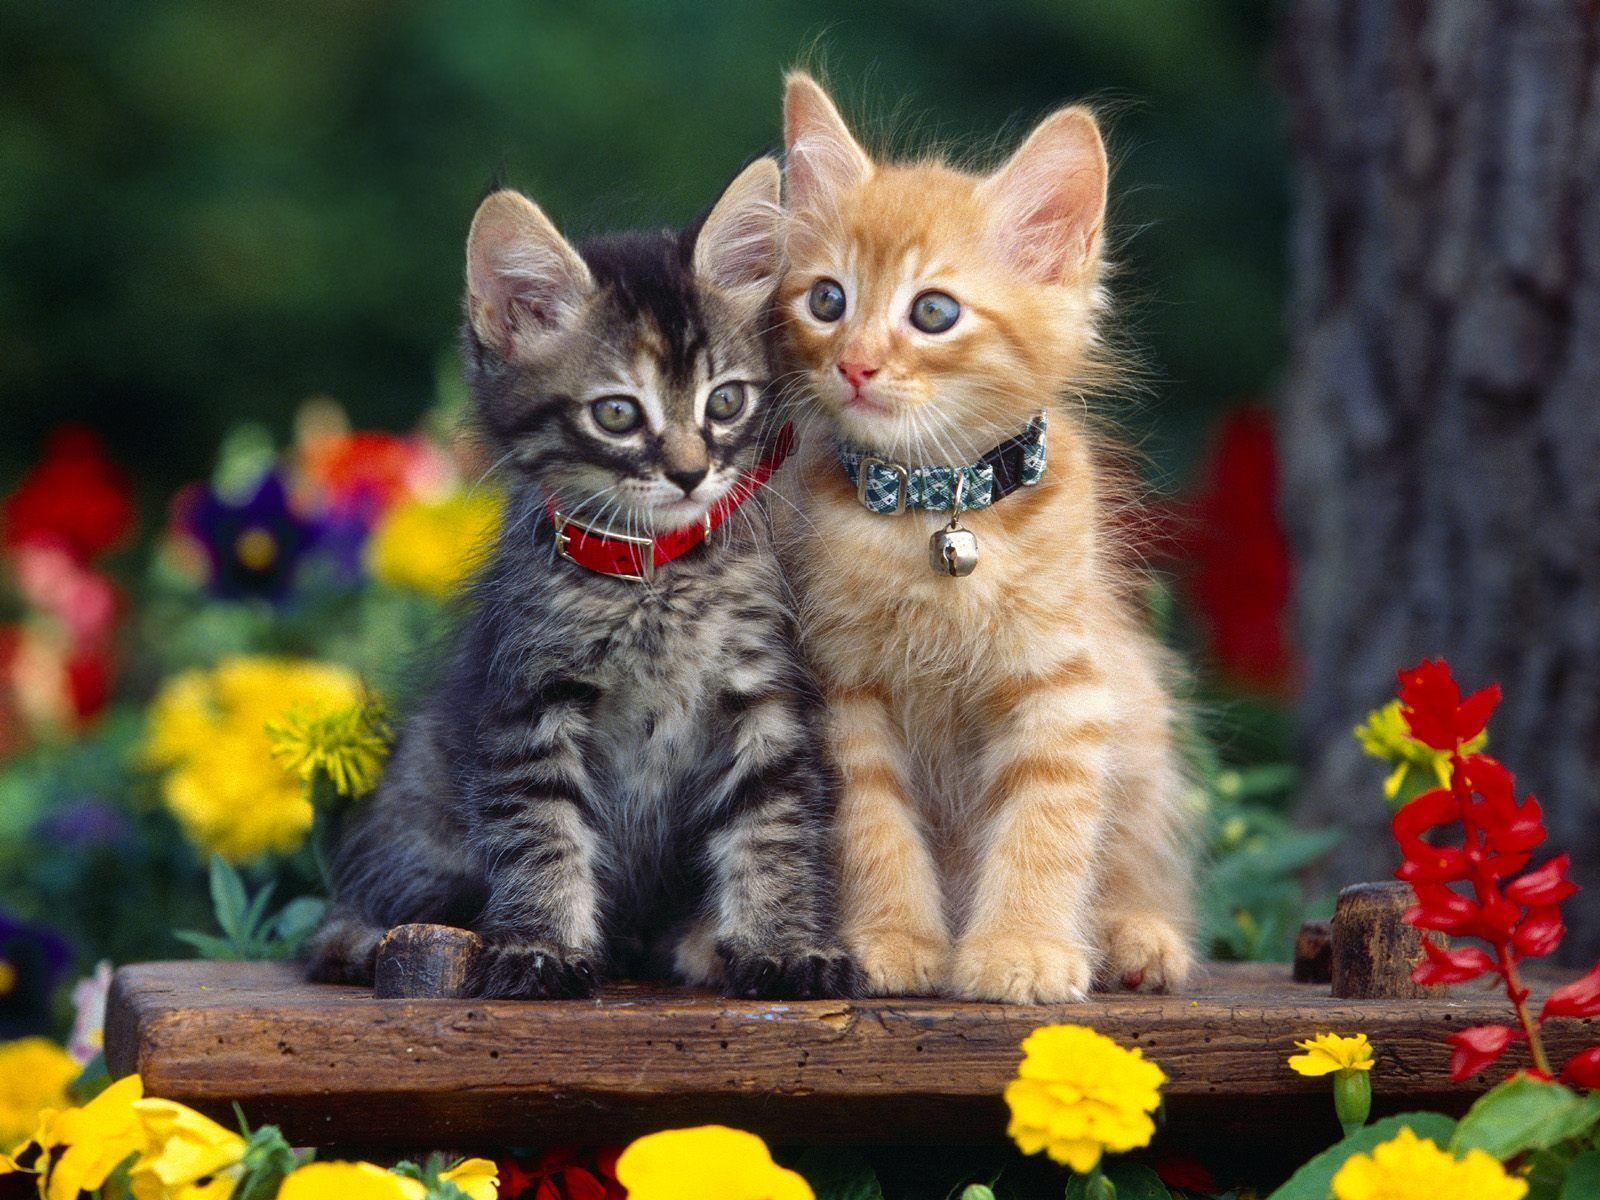 Free wallpaper Cute kittens in garden with flowers